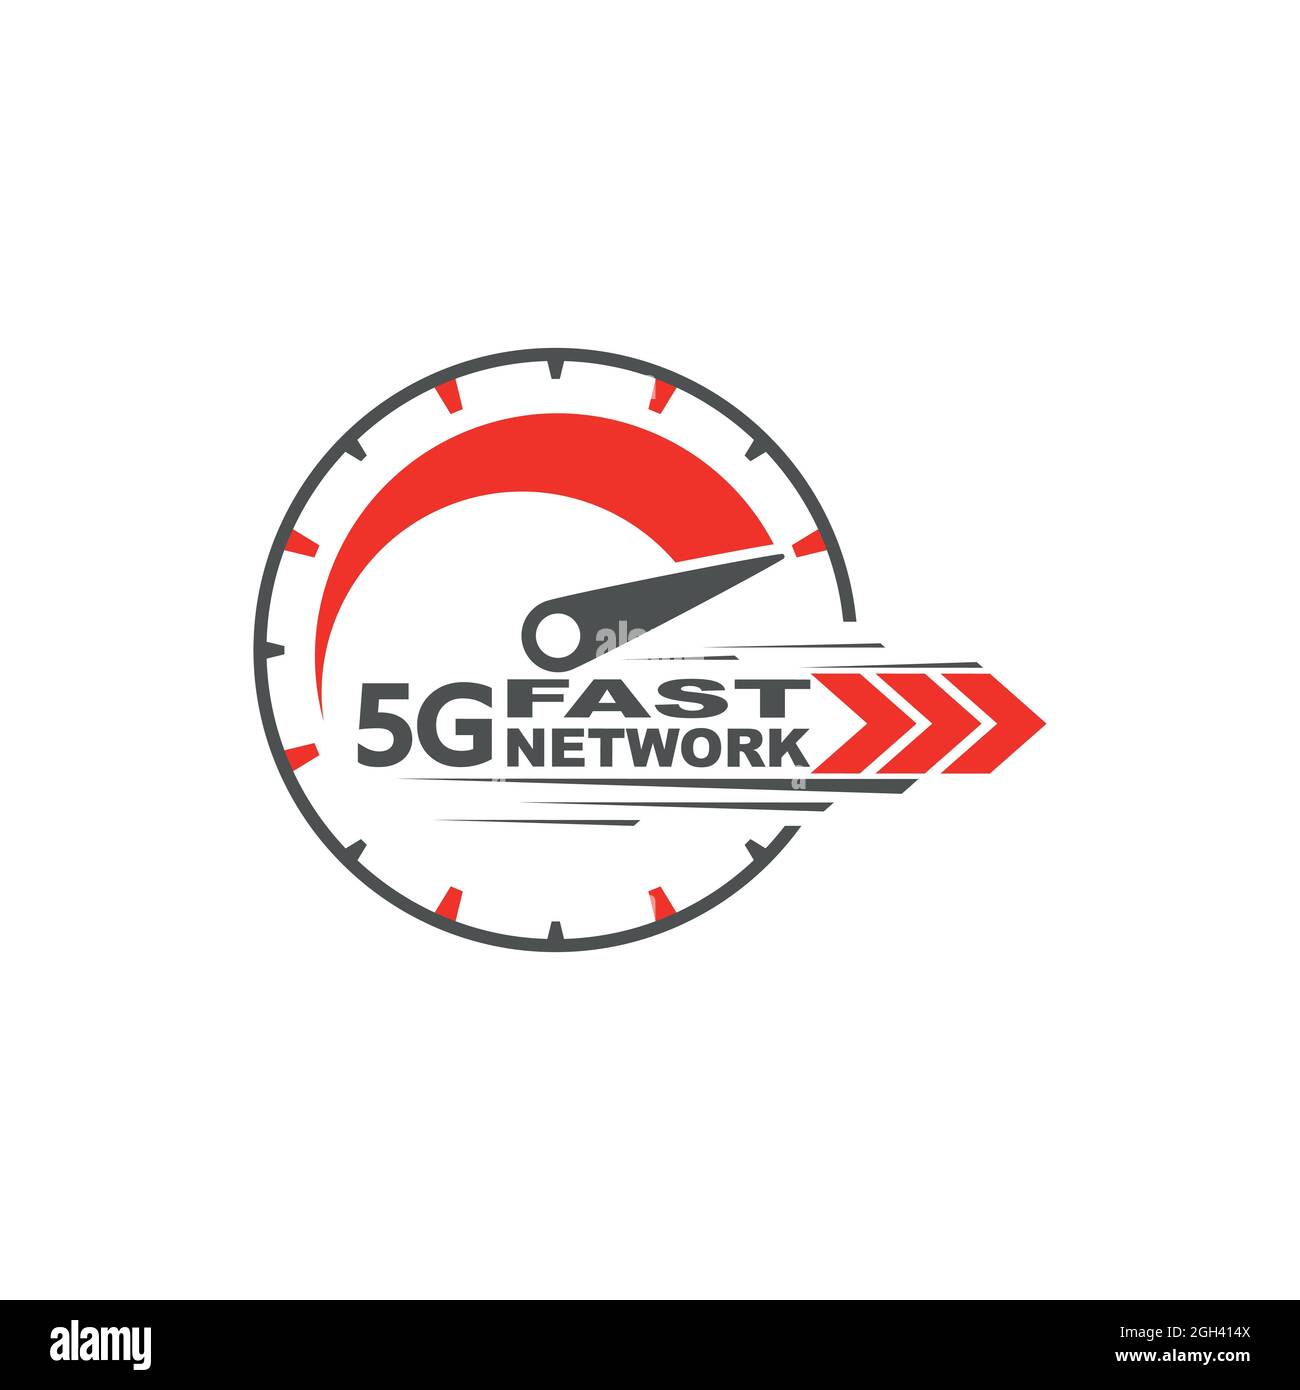 Tecnología inalámbrica de red 5g. Concepto de medidor de velocidad digital con icono de 5G. Internet de alta velocidad. Ilustración del Vector